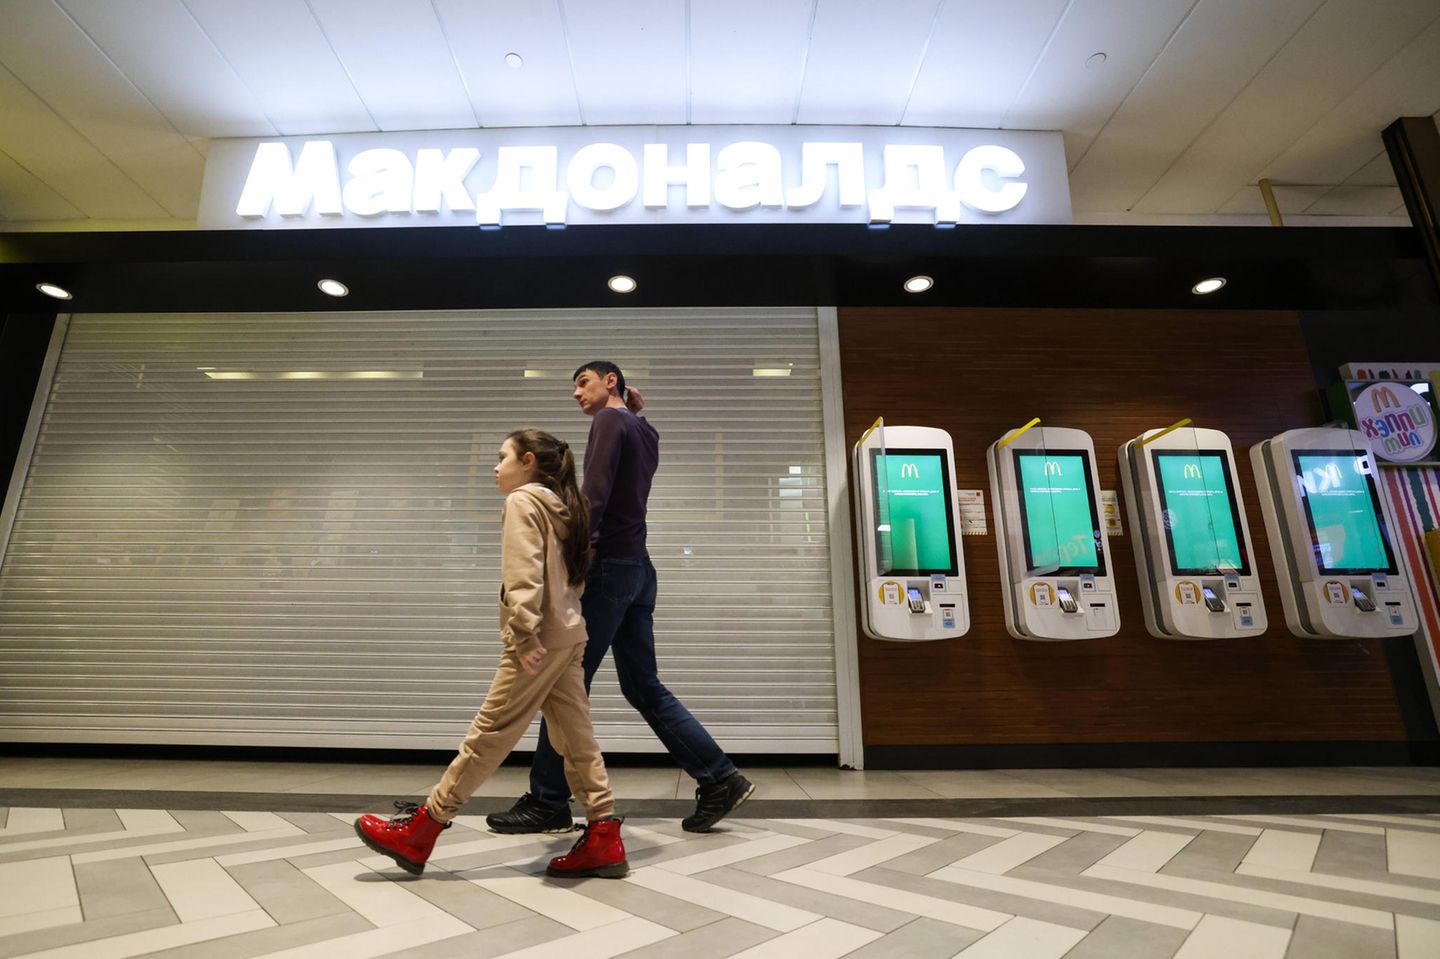 McDonalds zog sich infolge des Angriffskrieges aus Russland zurück. Für Duma-Sprecher Wjatscheslaw Wolodin kein Problem: „Morgen wird es nicht mehr McDonald's geben, sondern Onkel Wanja"